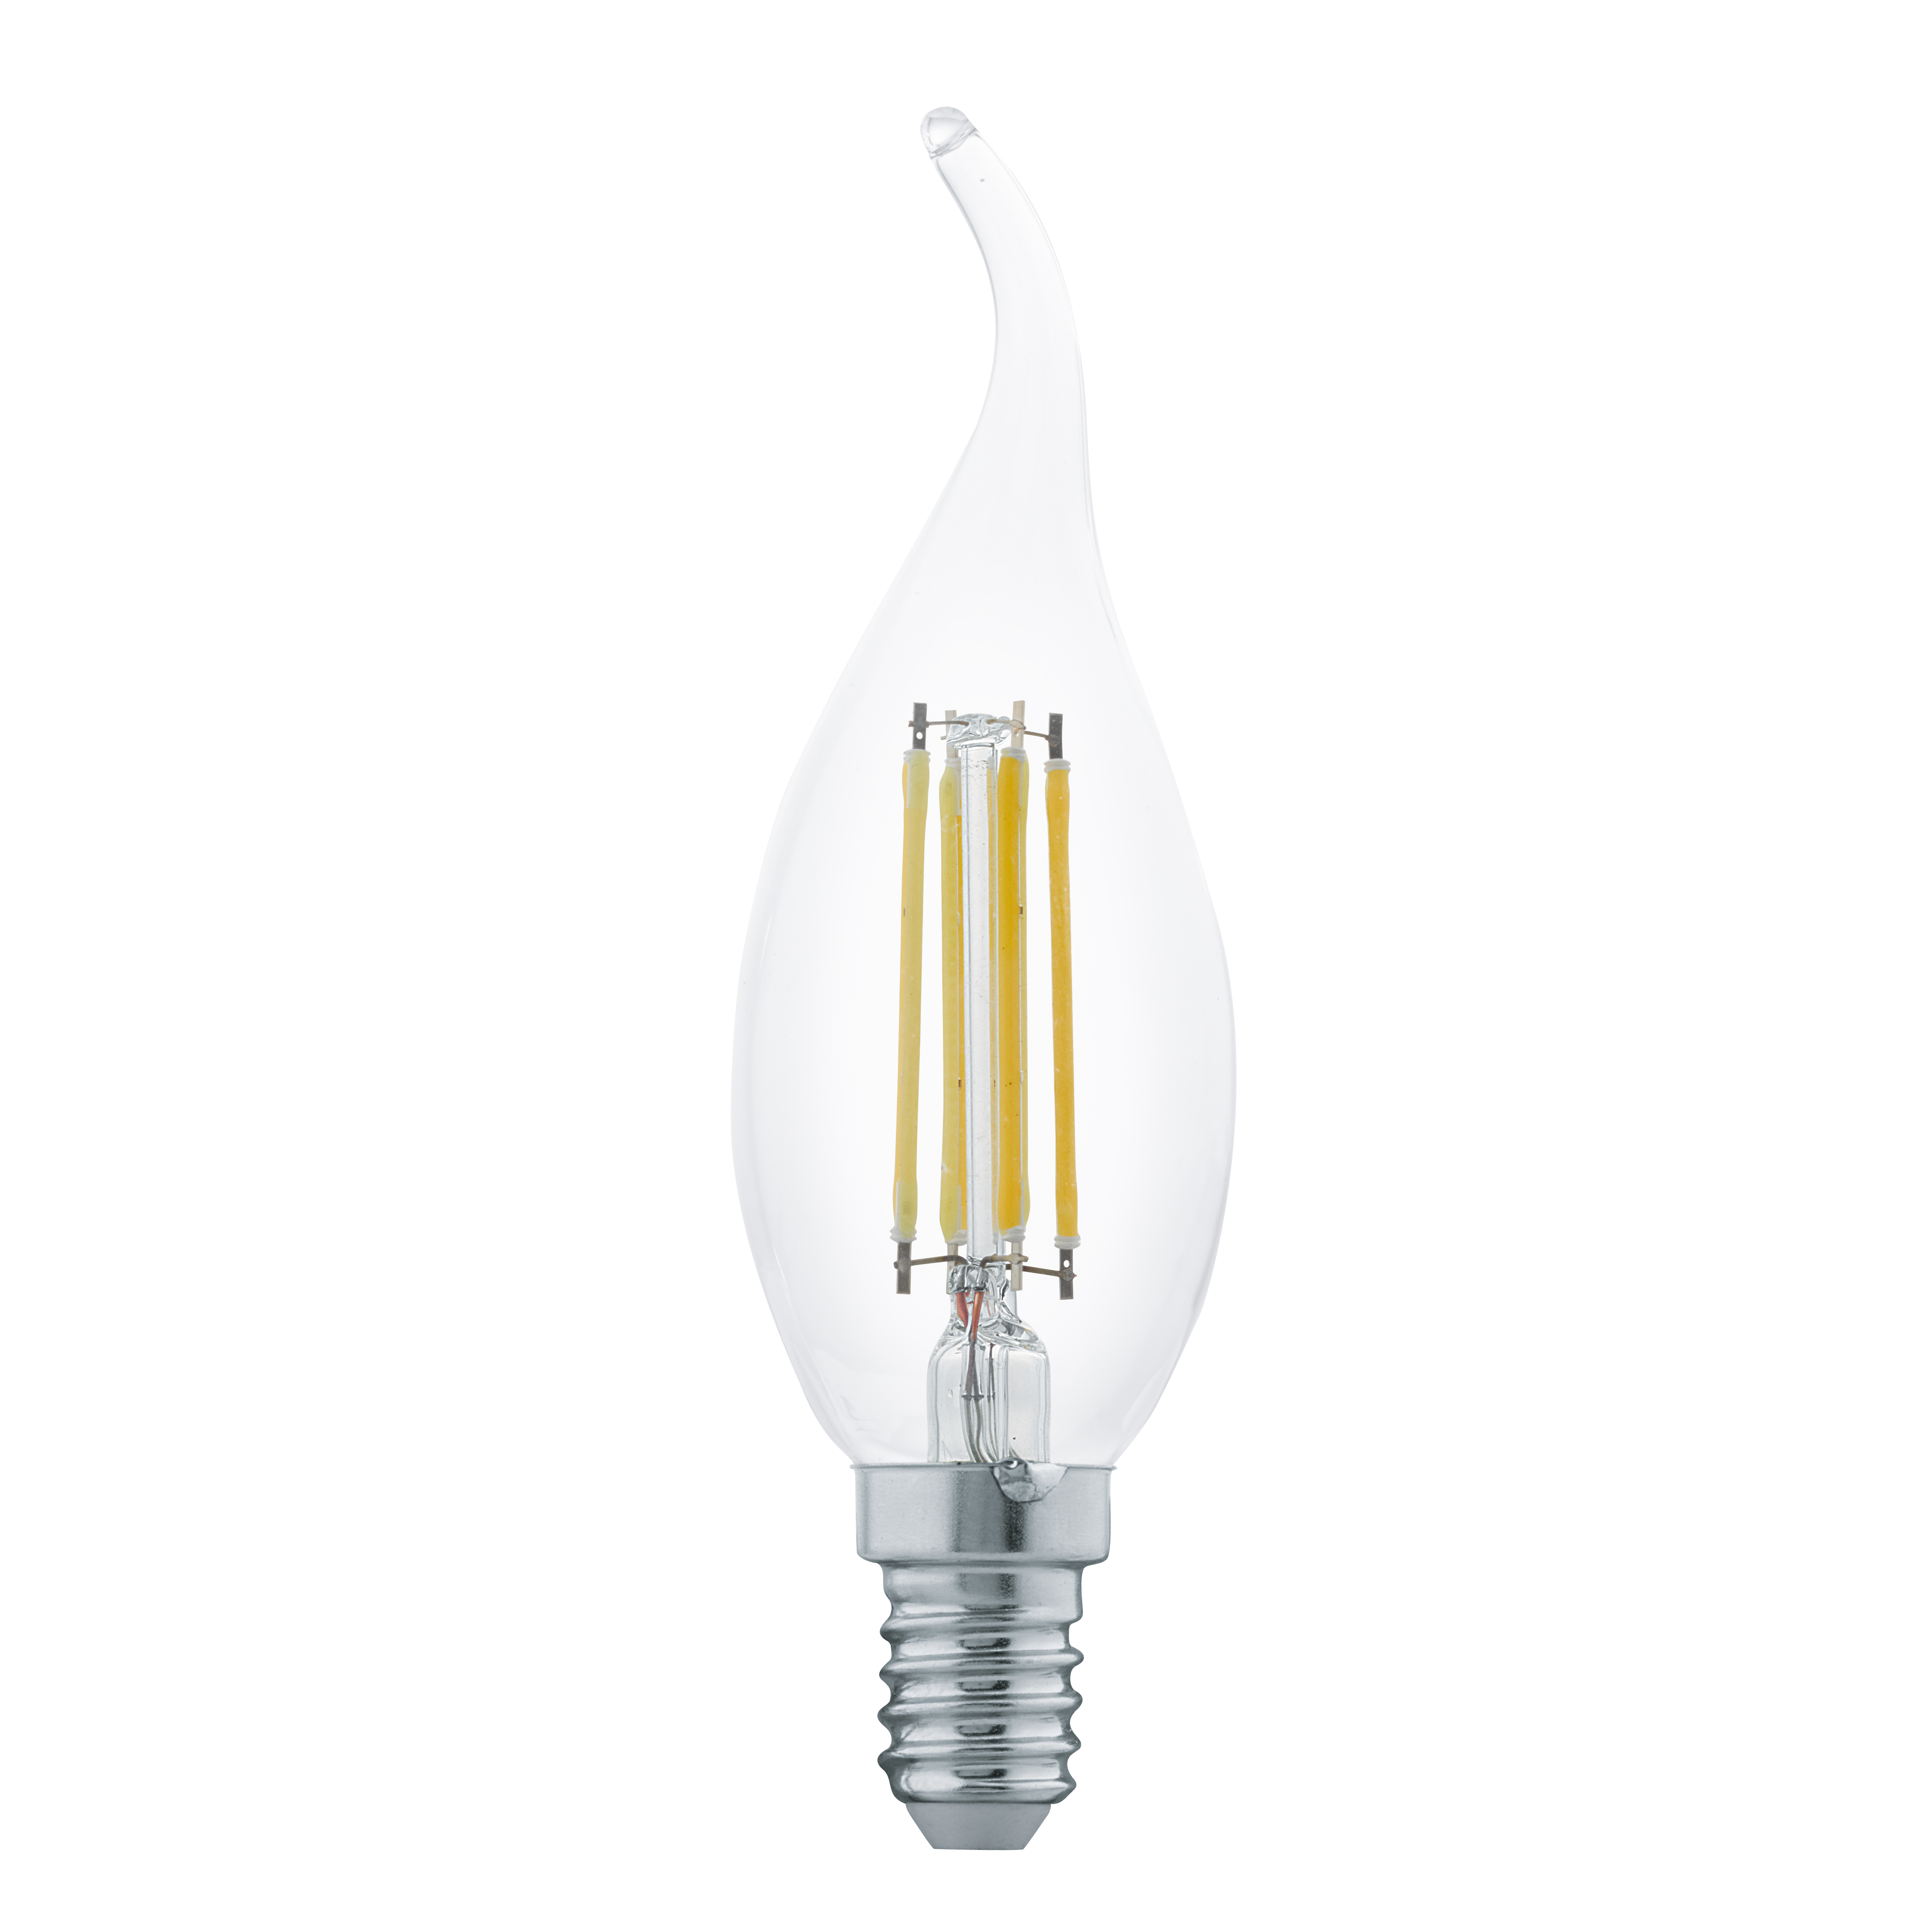 Светодиодные лампы купить цена. Лампа светодиодная филаментная e27. Лампа светодиодная филаментная Eglo e14. Лампочка Uniel led c35 7,5w ww e14 CL. Лампа светодиодная Эра f-led BXS-5w-827-e14.